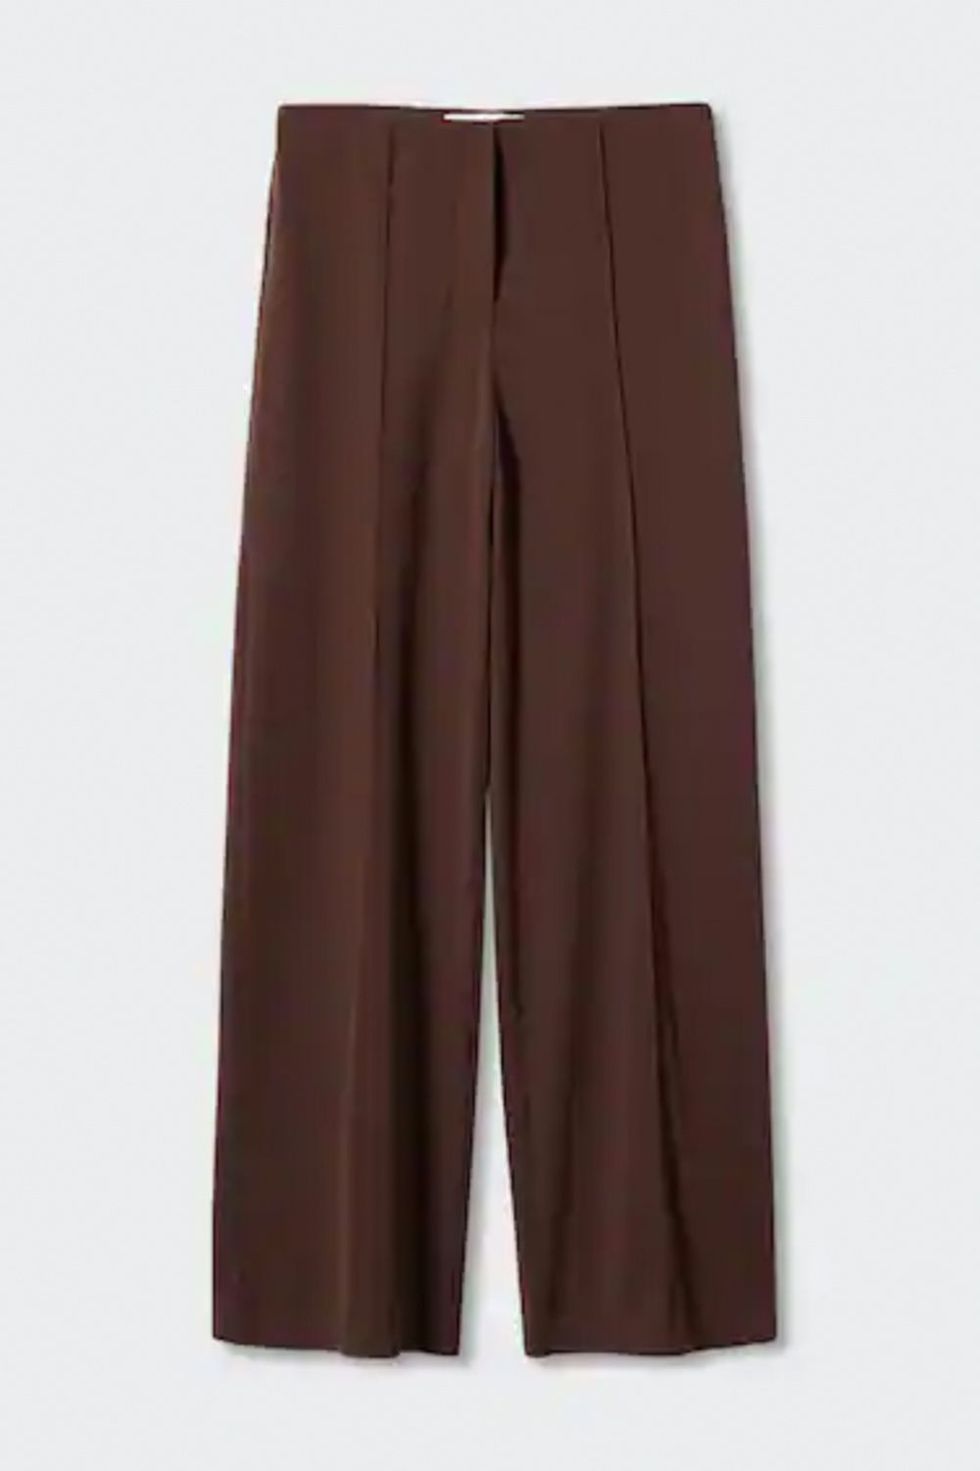 Pantalones de pinzas marrón chocolate